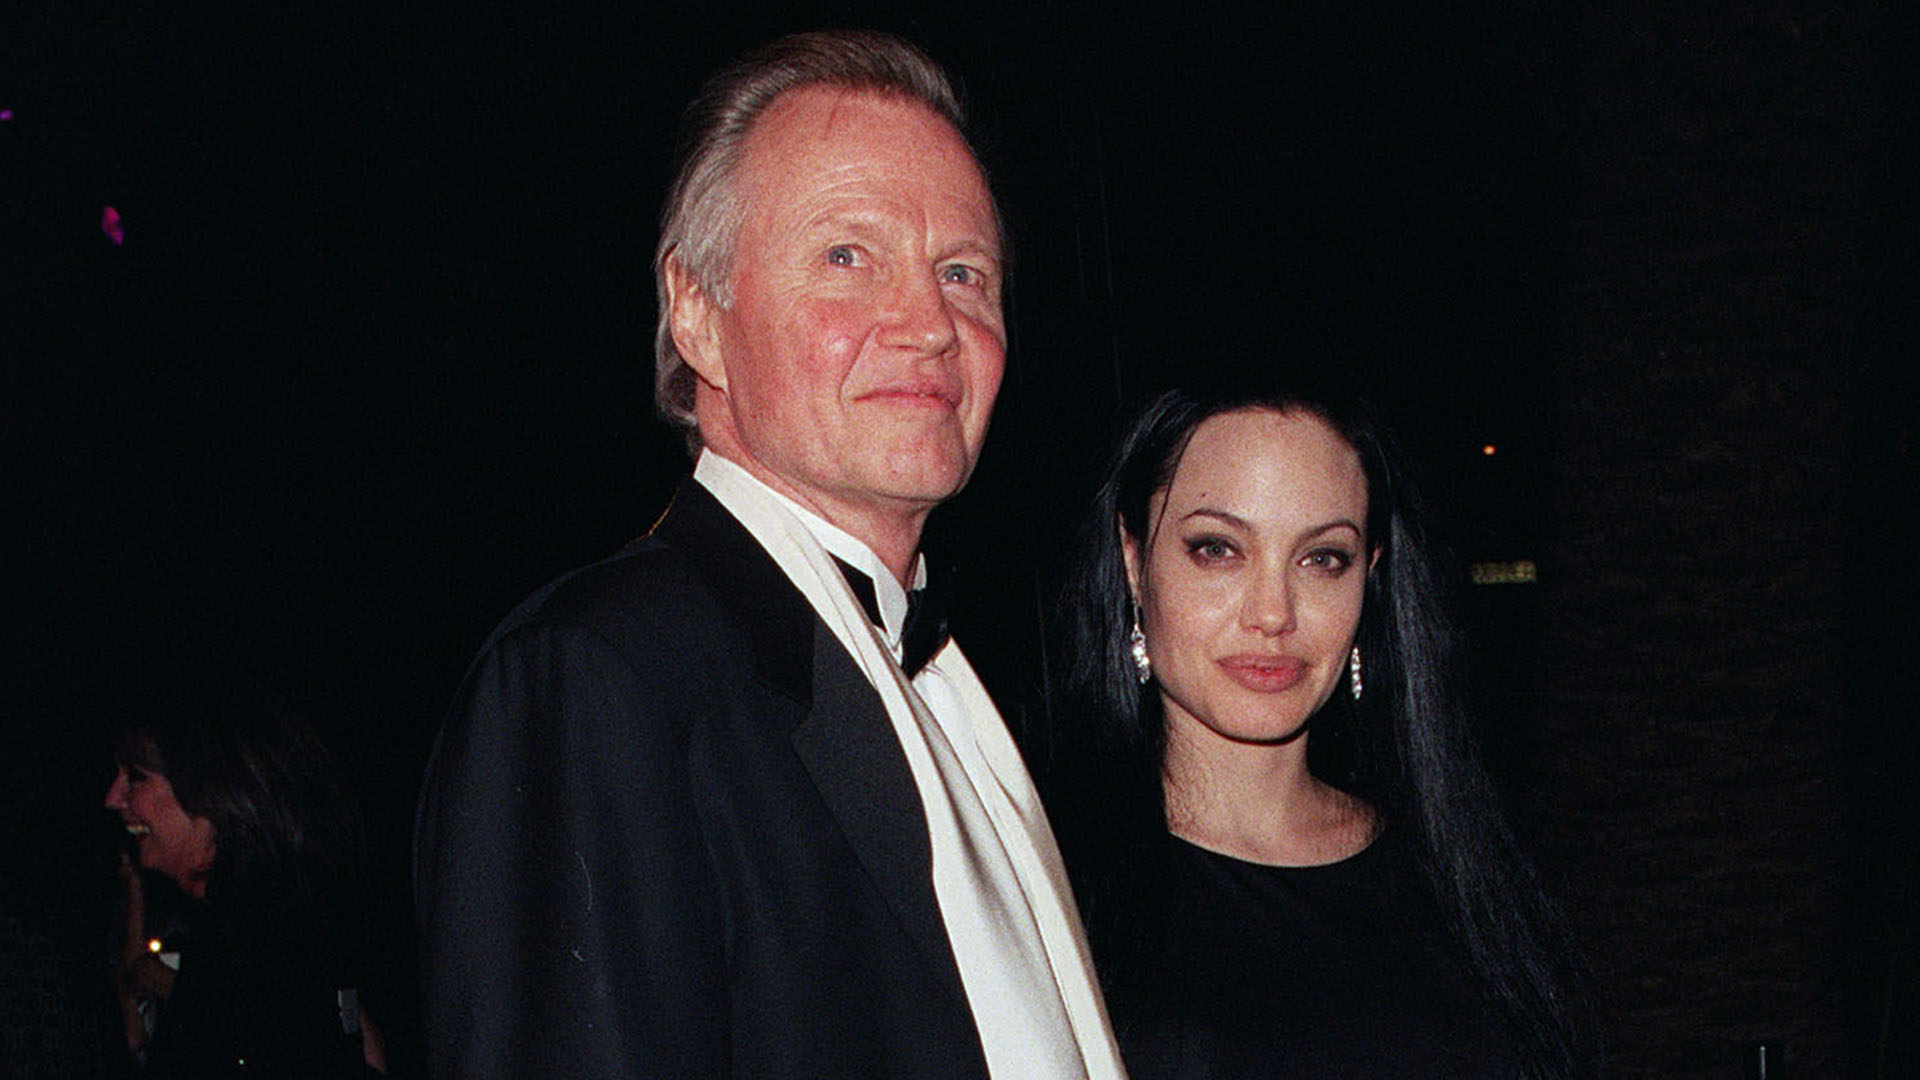 Los 83 de Jon Voight: el cowboy recio que no habló por años con su hija Angelina  Jolie y se reconcilió a tiempo - Infobae